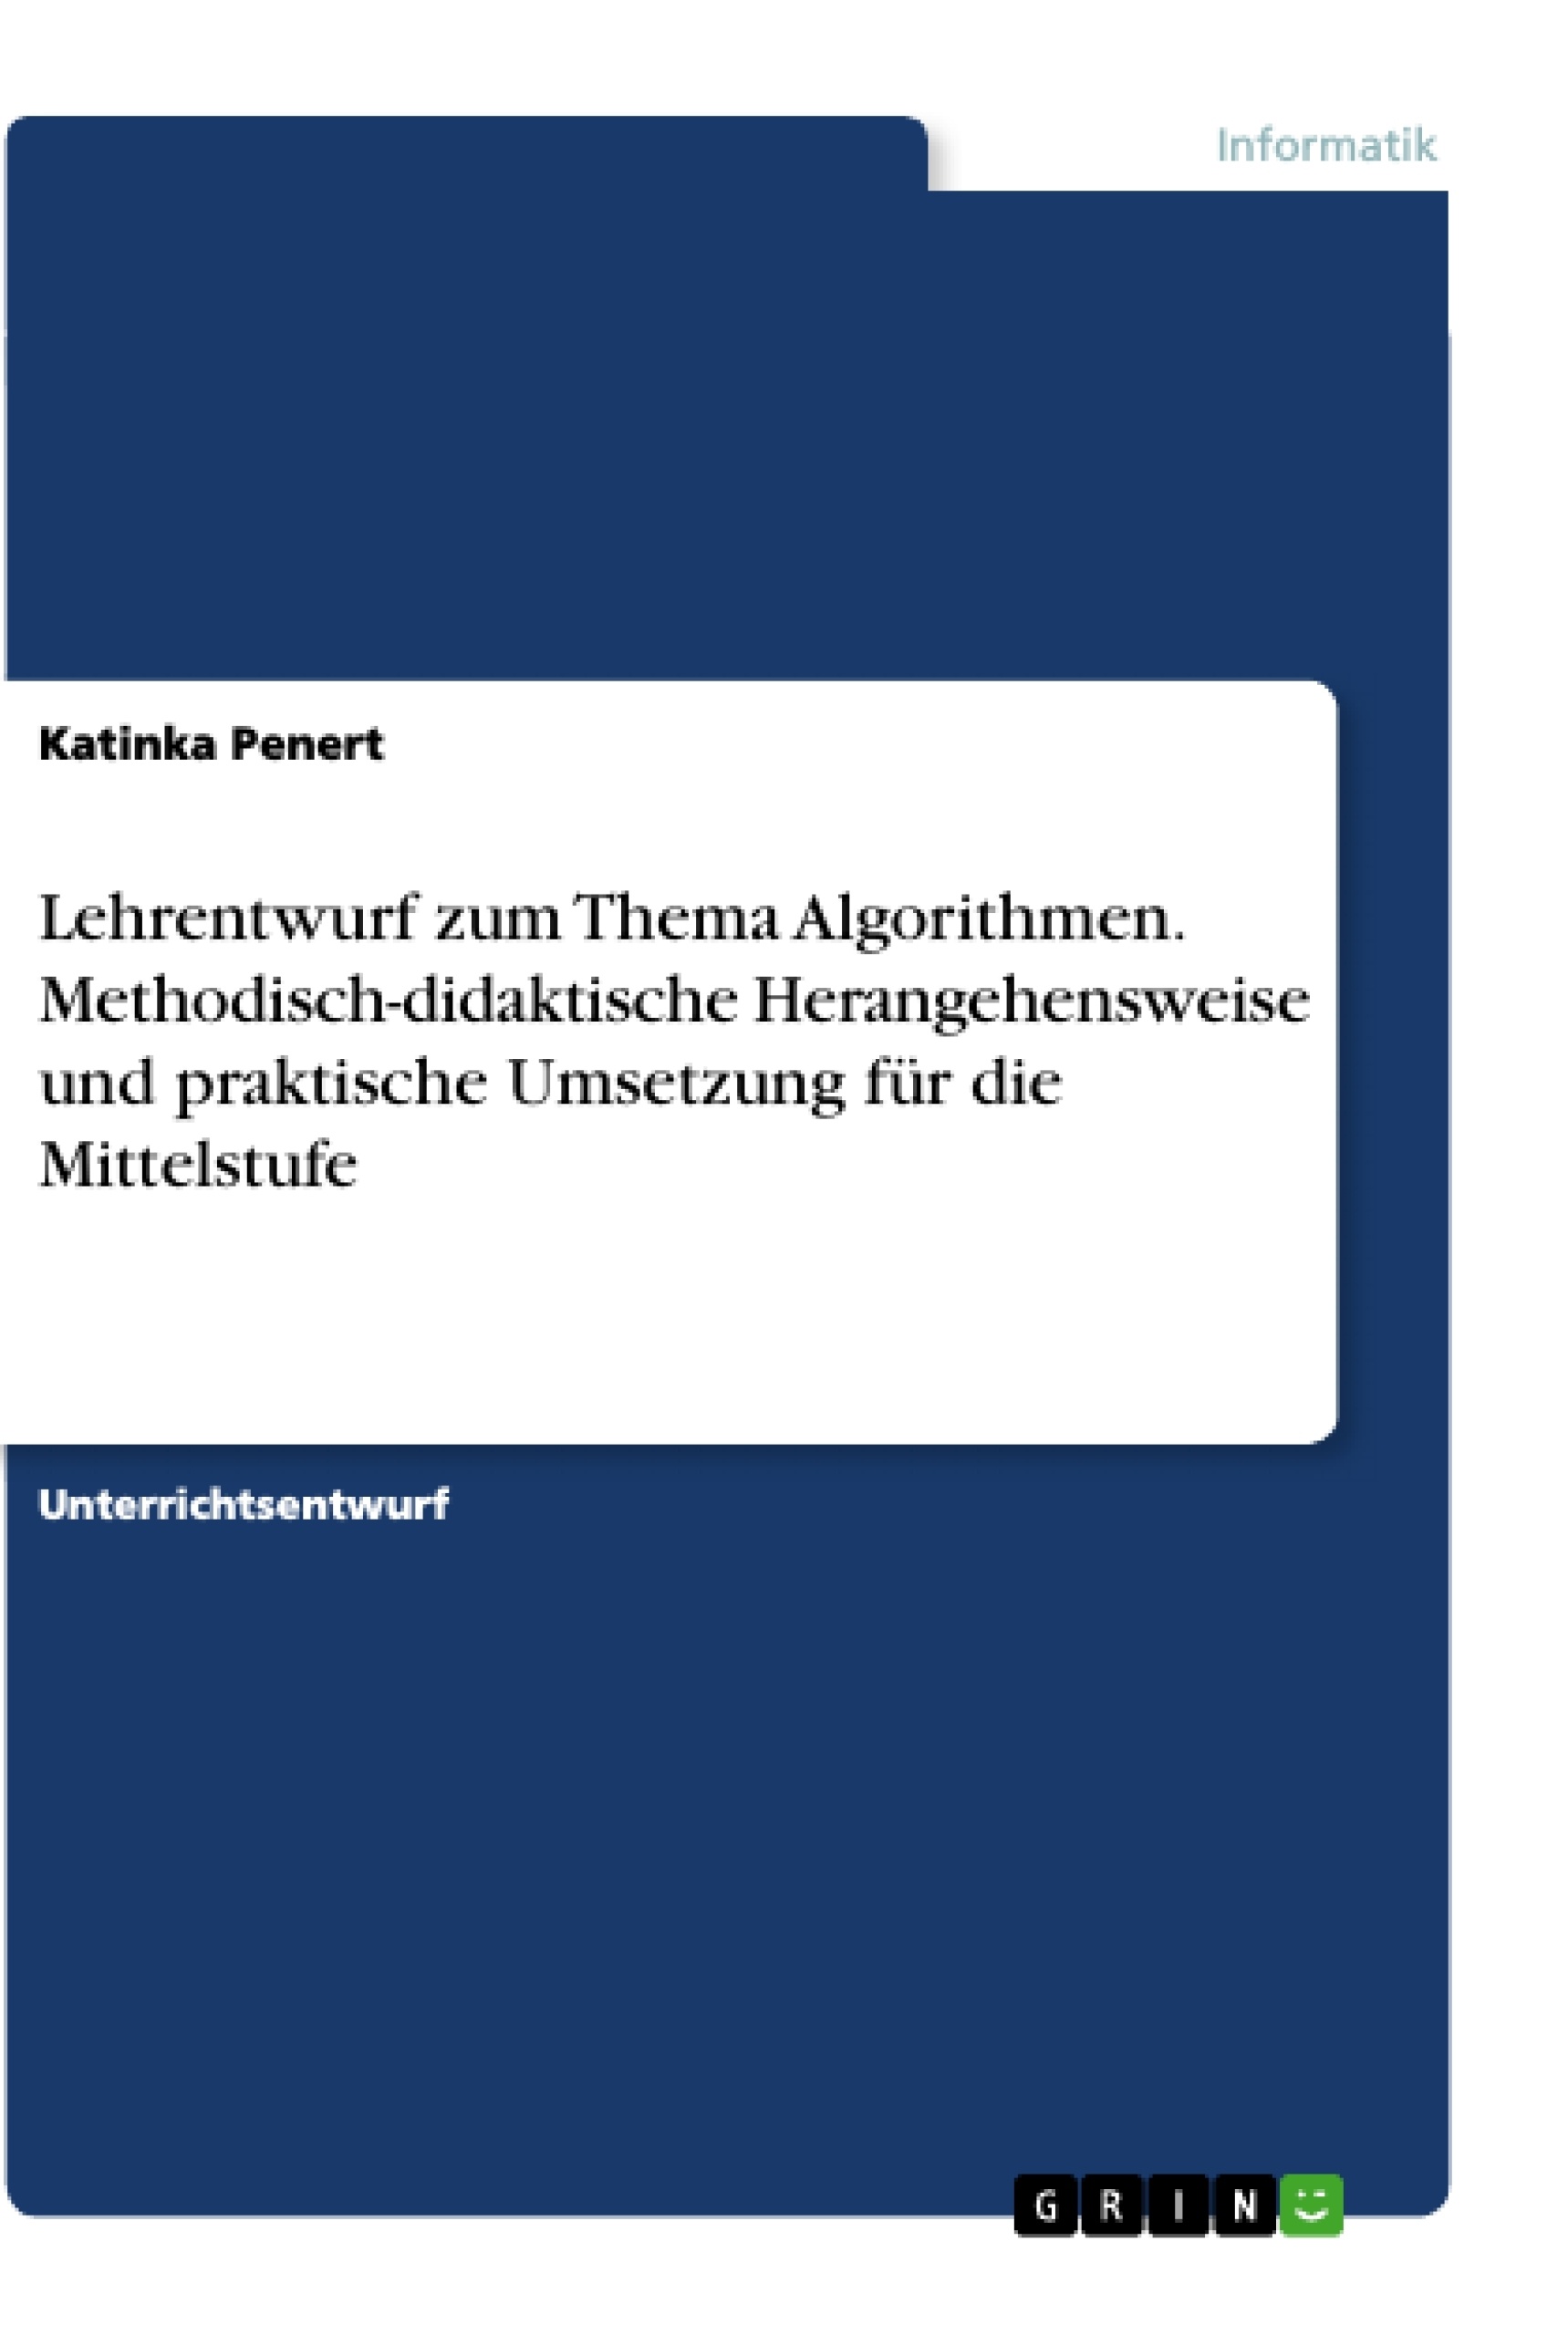 Titel: Lehrentwurf zum Thema Algorithmen. Methodisch-didaktische Herangehensweise und praktische Umsetzung für die Mittelstufe